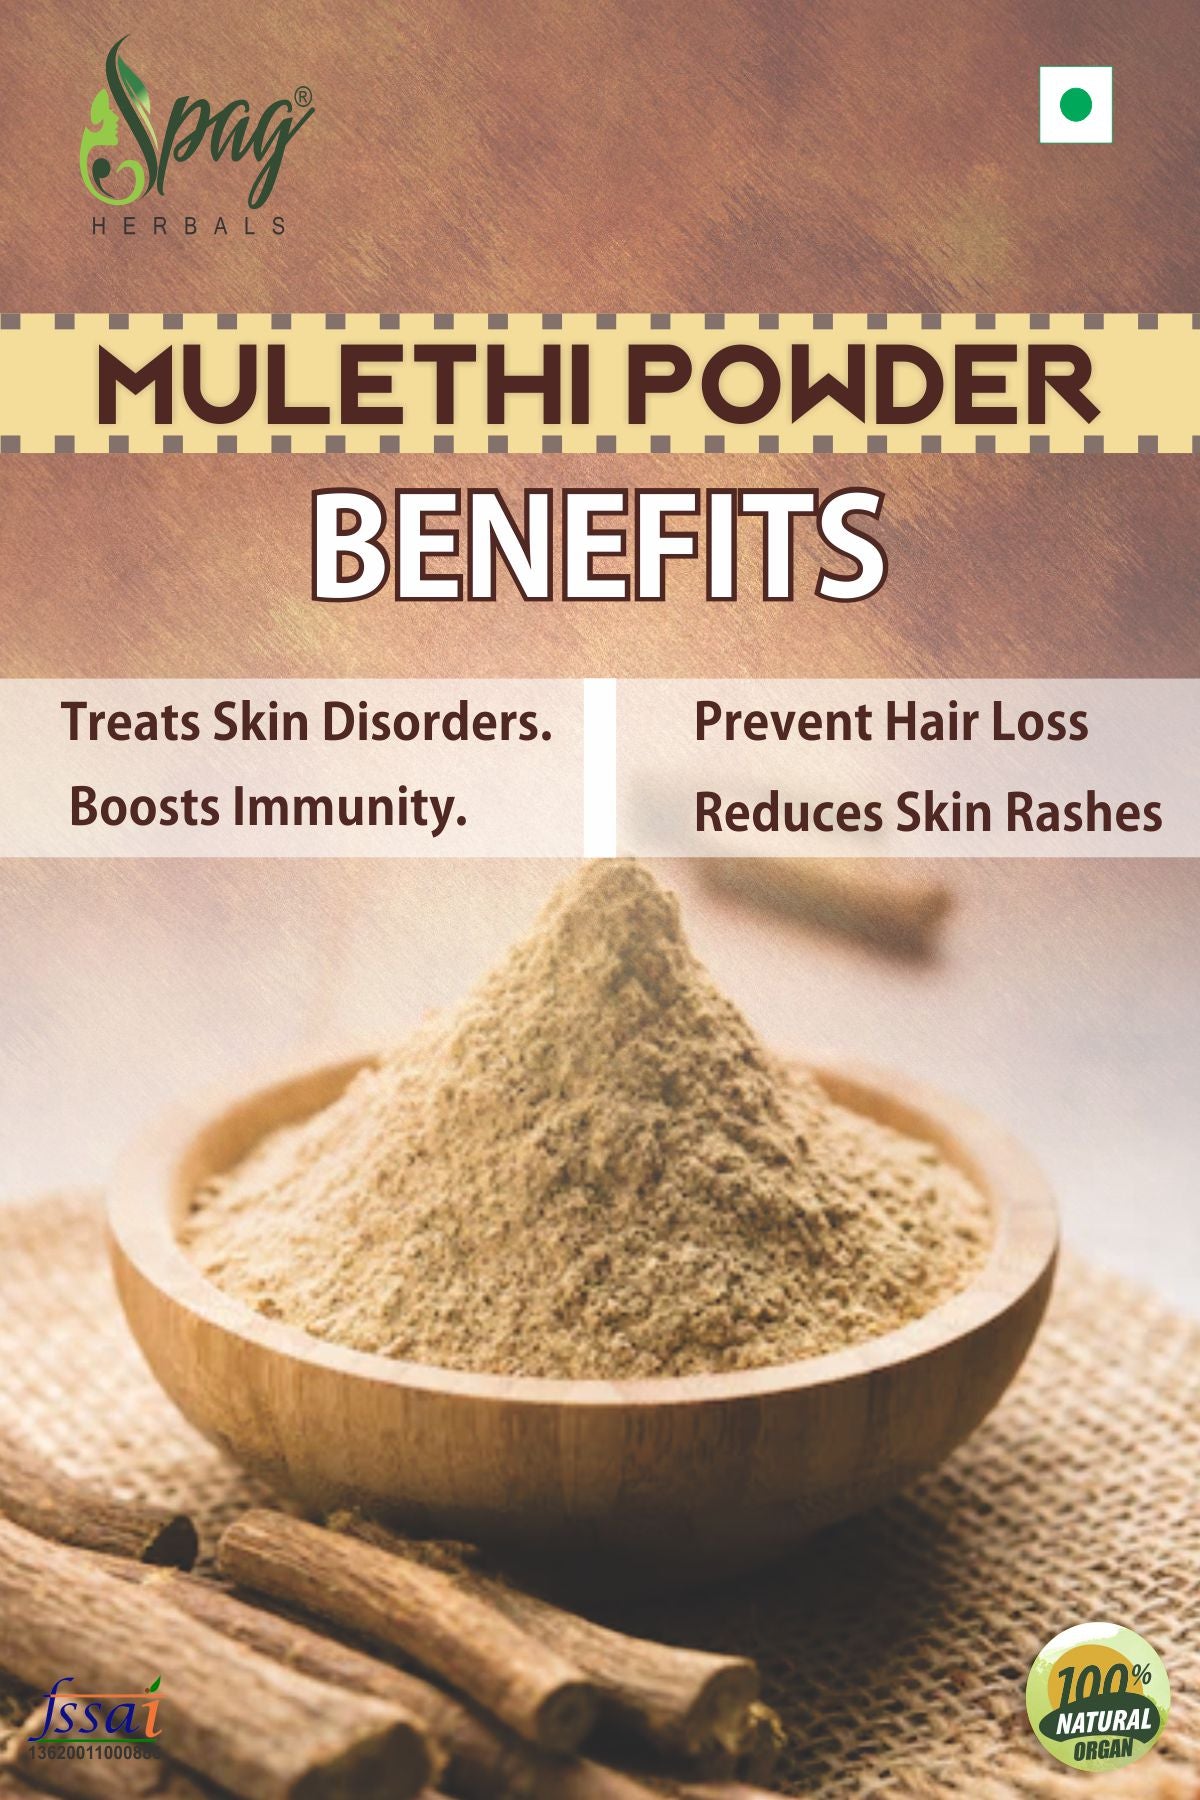 Spag Herbals Mulethi Powder - Distacart